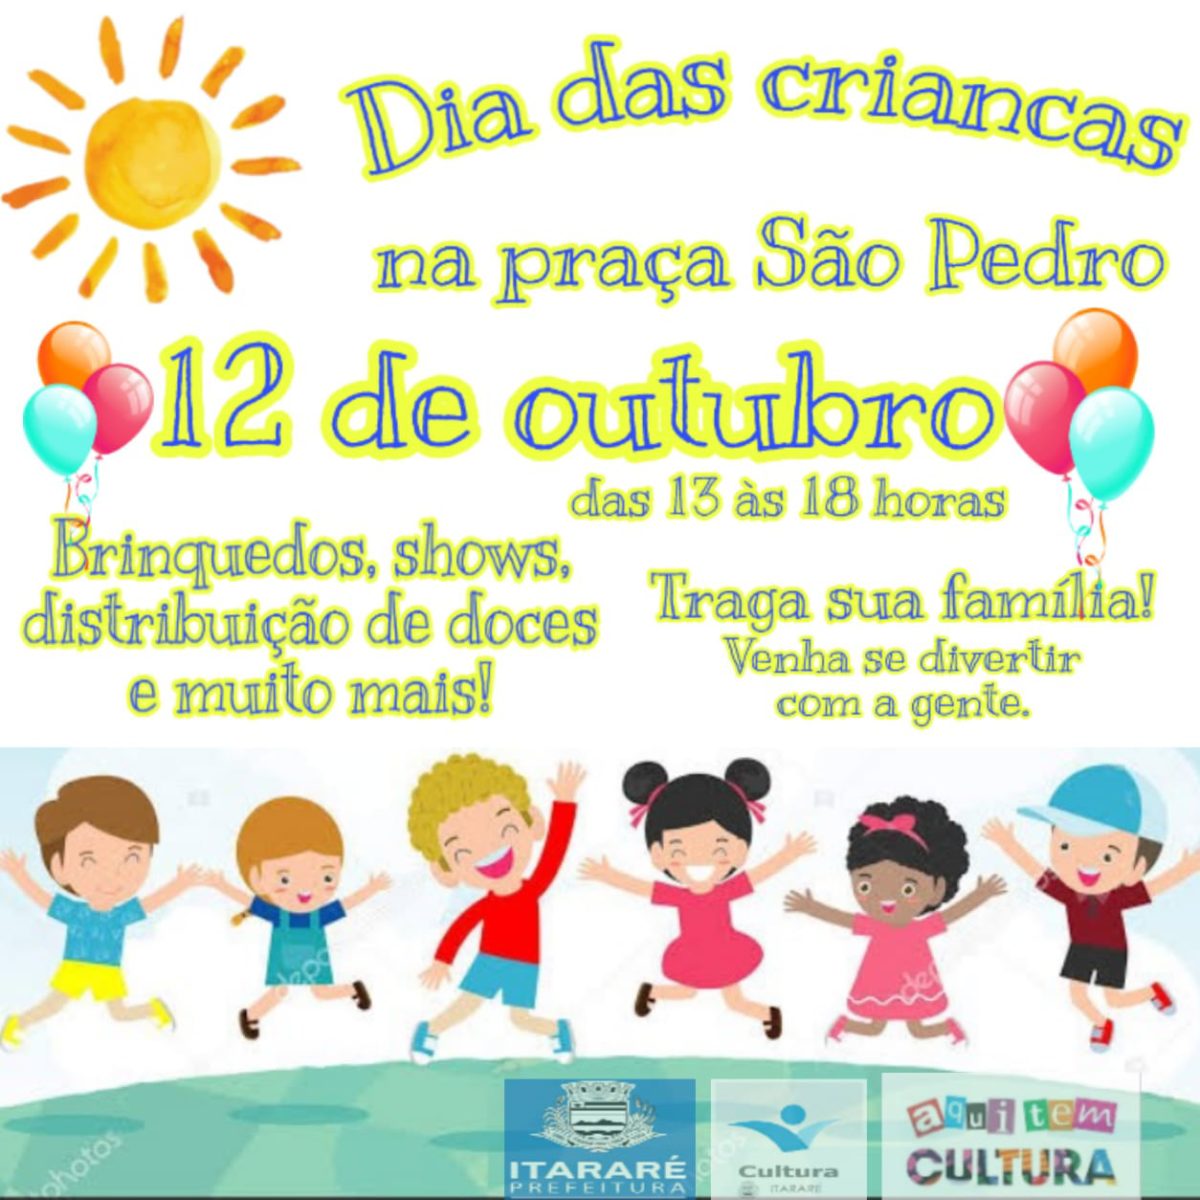 Cultura de Itararé (SP) promoverá programação especial para o Dia das Crianças